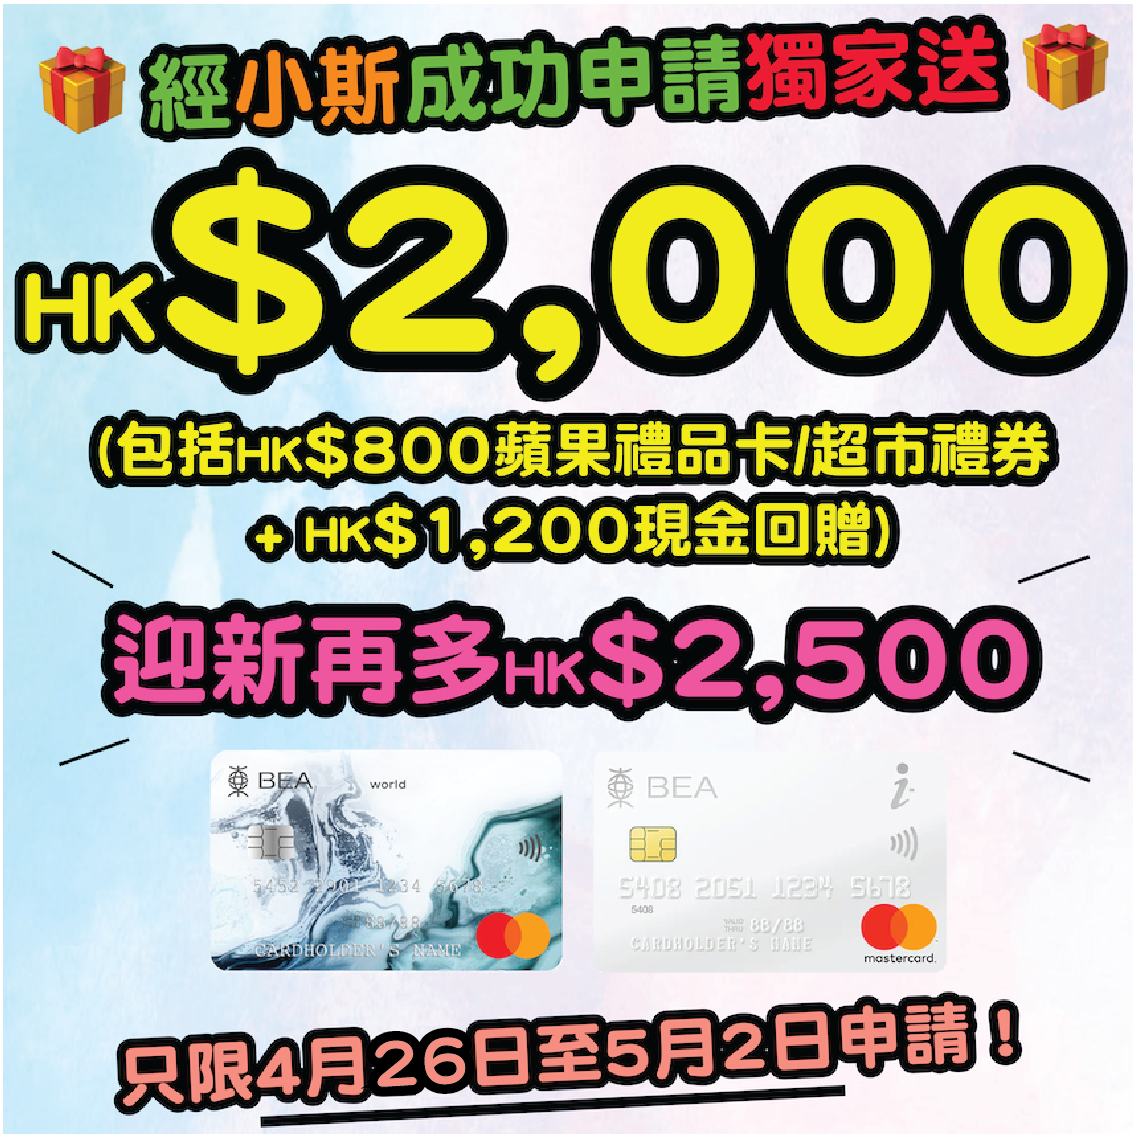 【🔥🔥小斯優惠加碼😍😍 經小斯申請就有HK$2,000 + HK$2,500迎新！合共HK$4,500】2022年4月26日至5月2日，新客戶經小斯申請東亞銀行BEA World Mastercard + BEA i-Titanium卡就有小斯獨家高達HK$2,000獎賞 (HK$800 Apple Gift Card 或 超市禮券 + HK$1,200現金回贈)！仲可以同時賺高達HK$2,500迎新！合共HK$4,500獎賞！